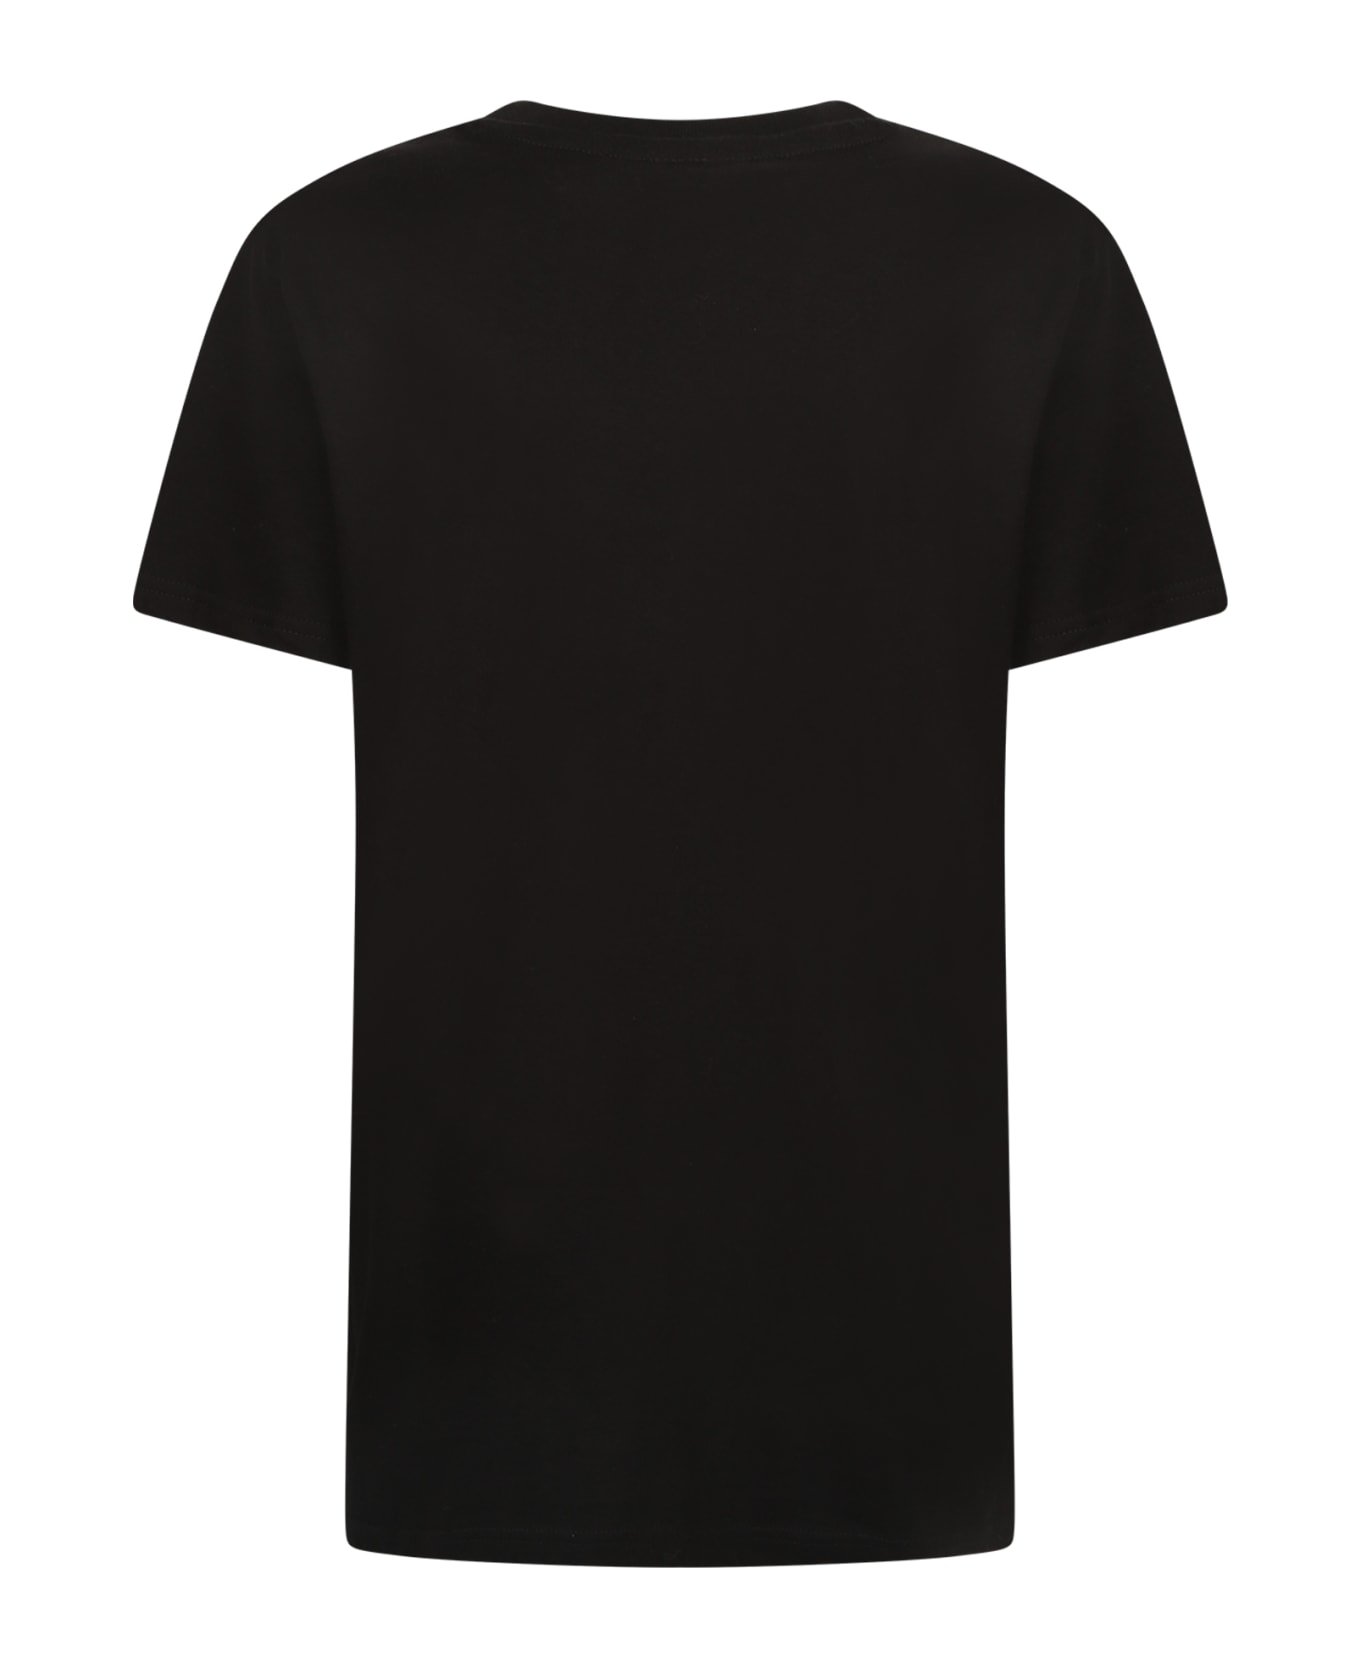 Alessandro Enriquez Cotton T-shirt - Black Tシャツ